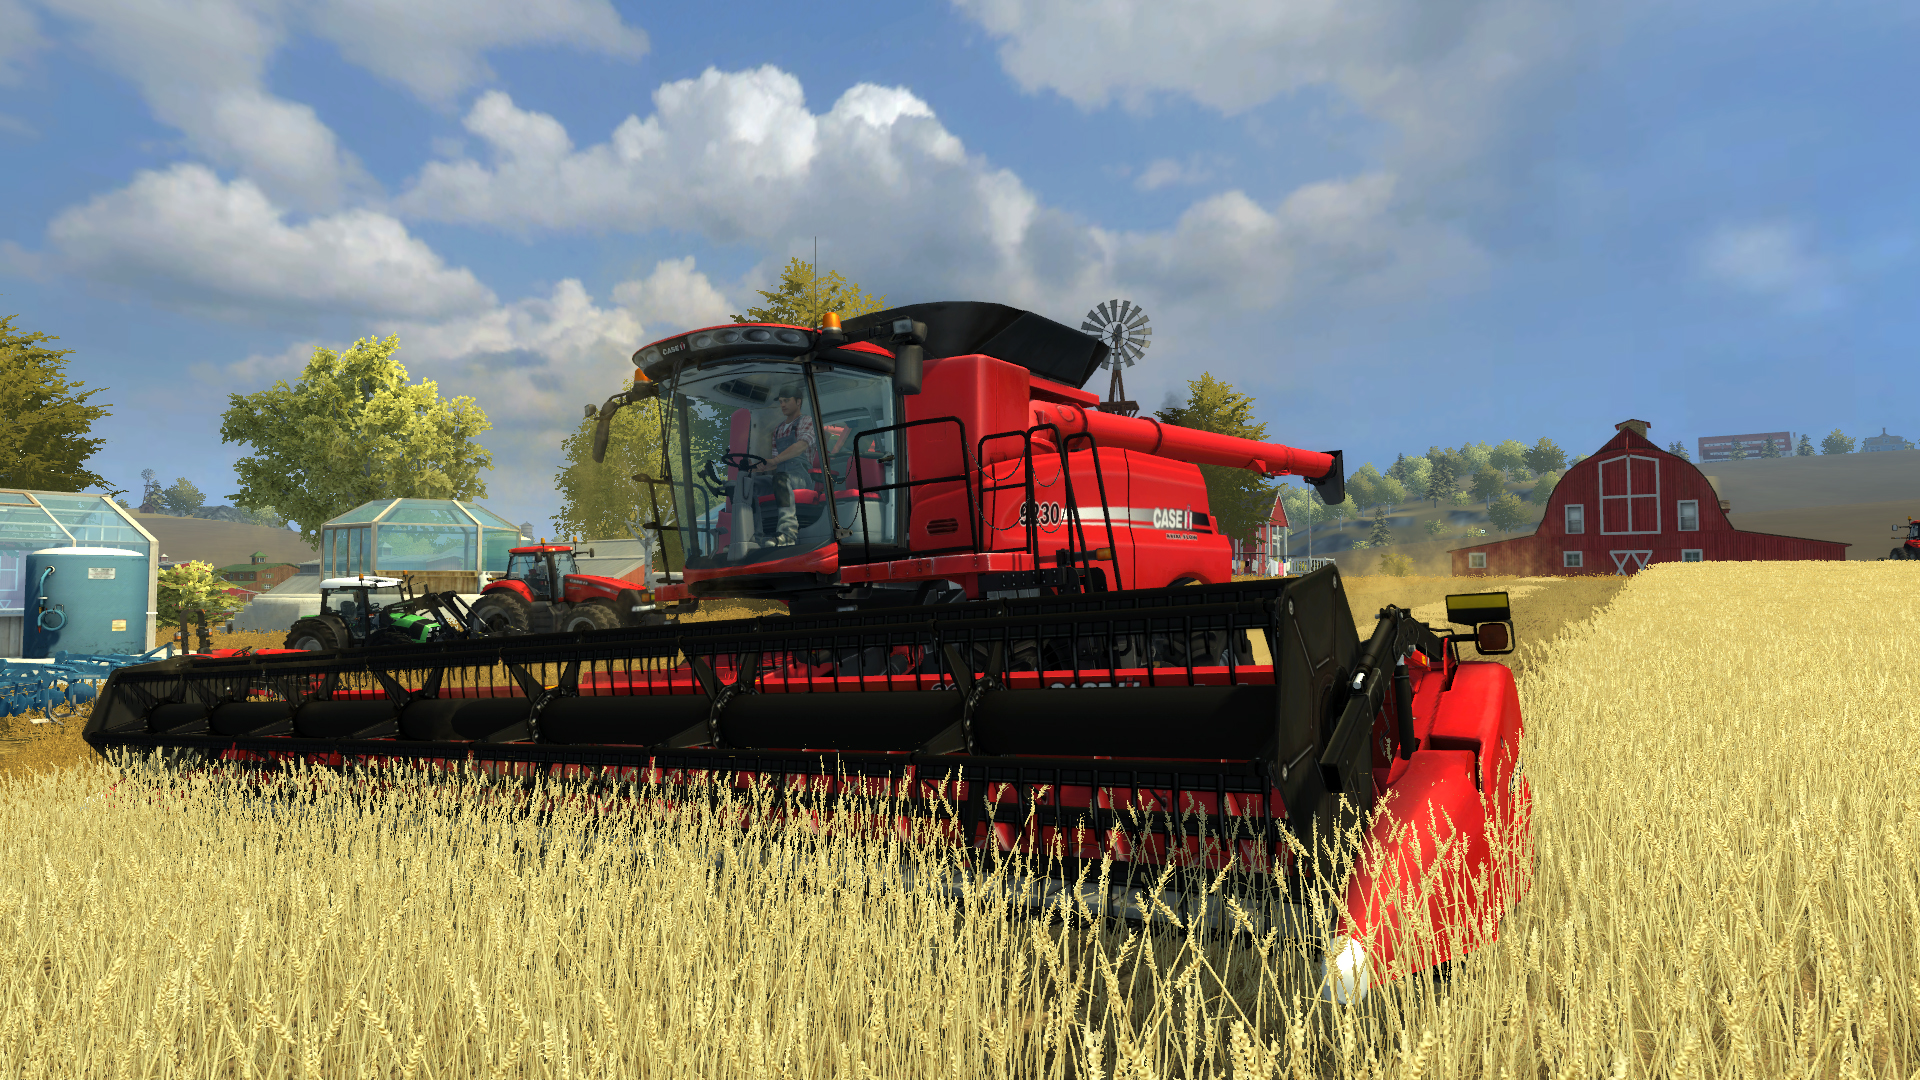 download farming simulator 22 platinum edition